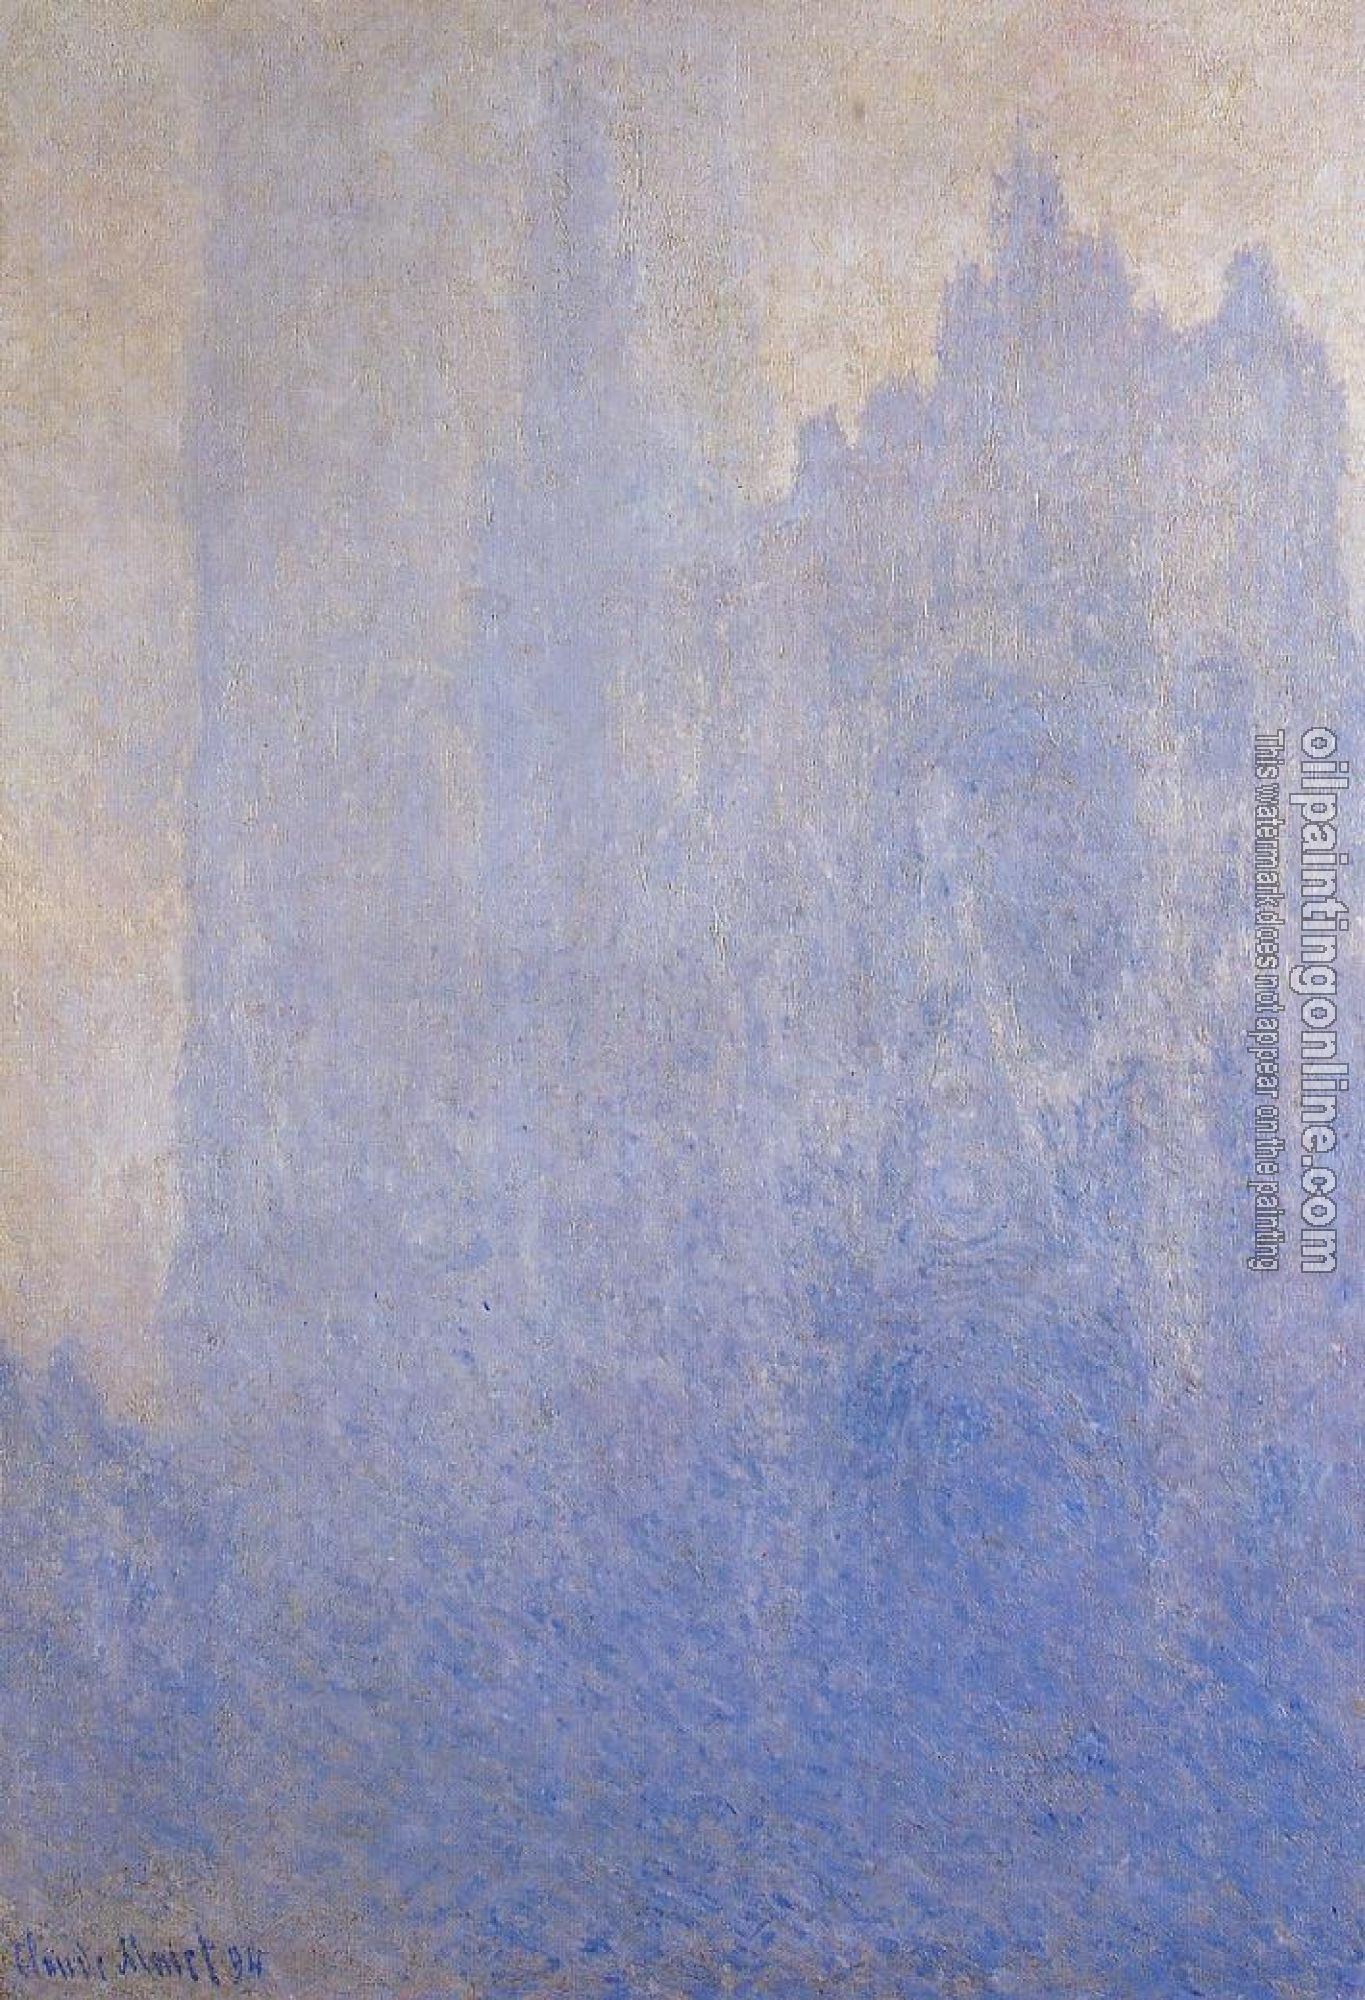 Monet, Claude Oscar - Rouen Cathedral, Fog